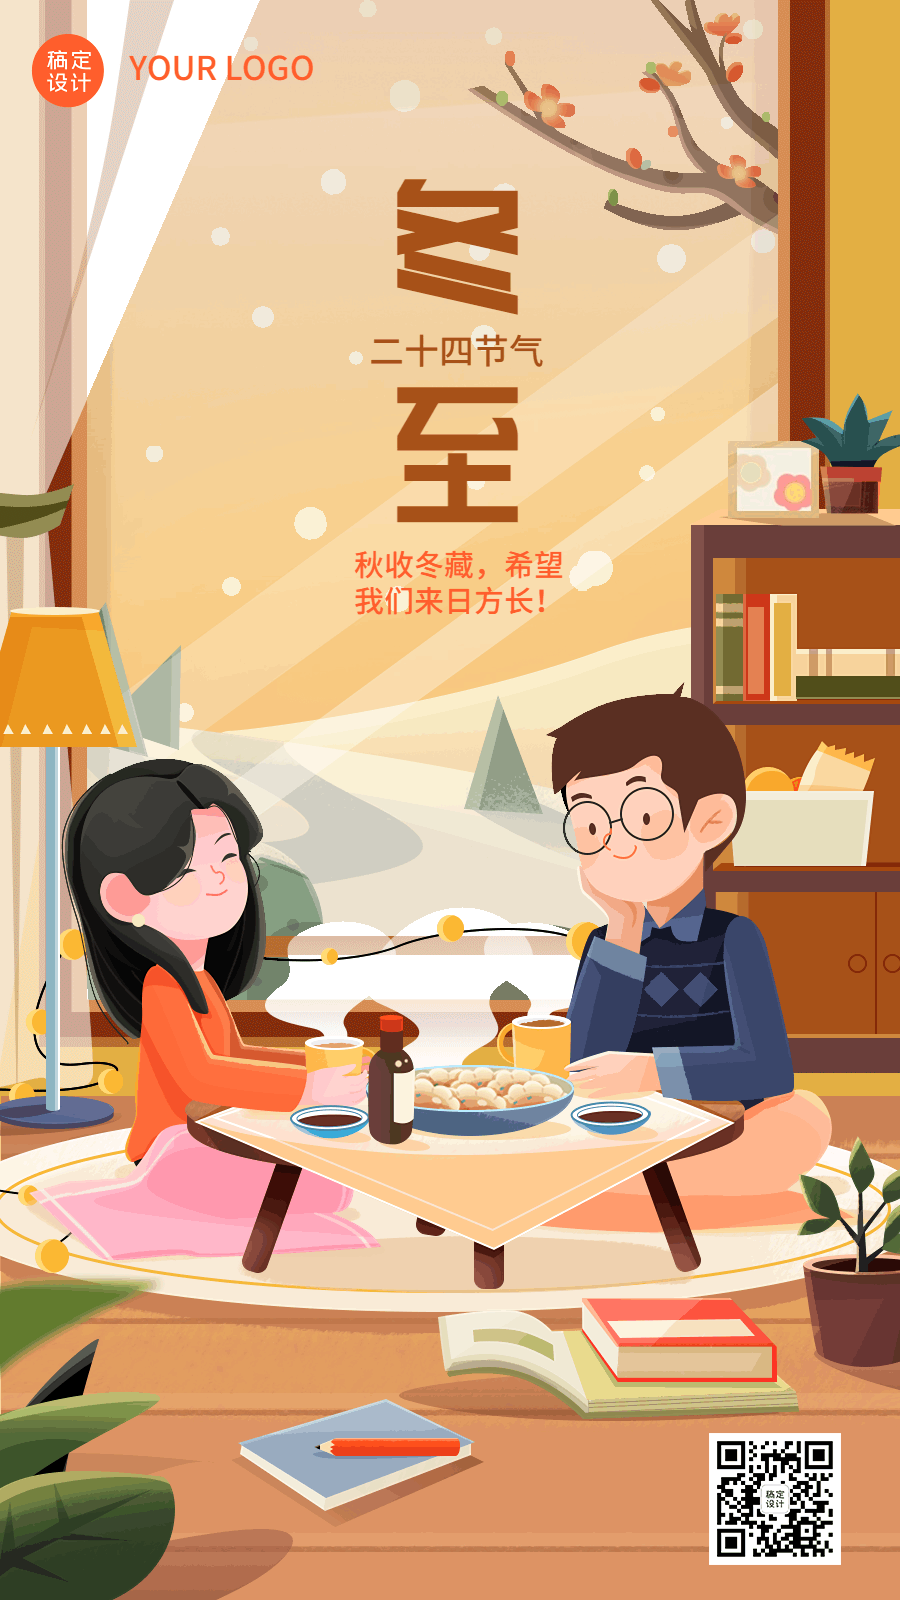 冬至节气祝福饺子插画手机海报